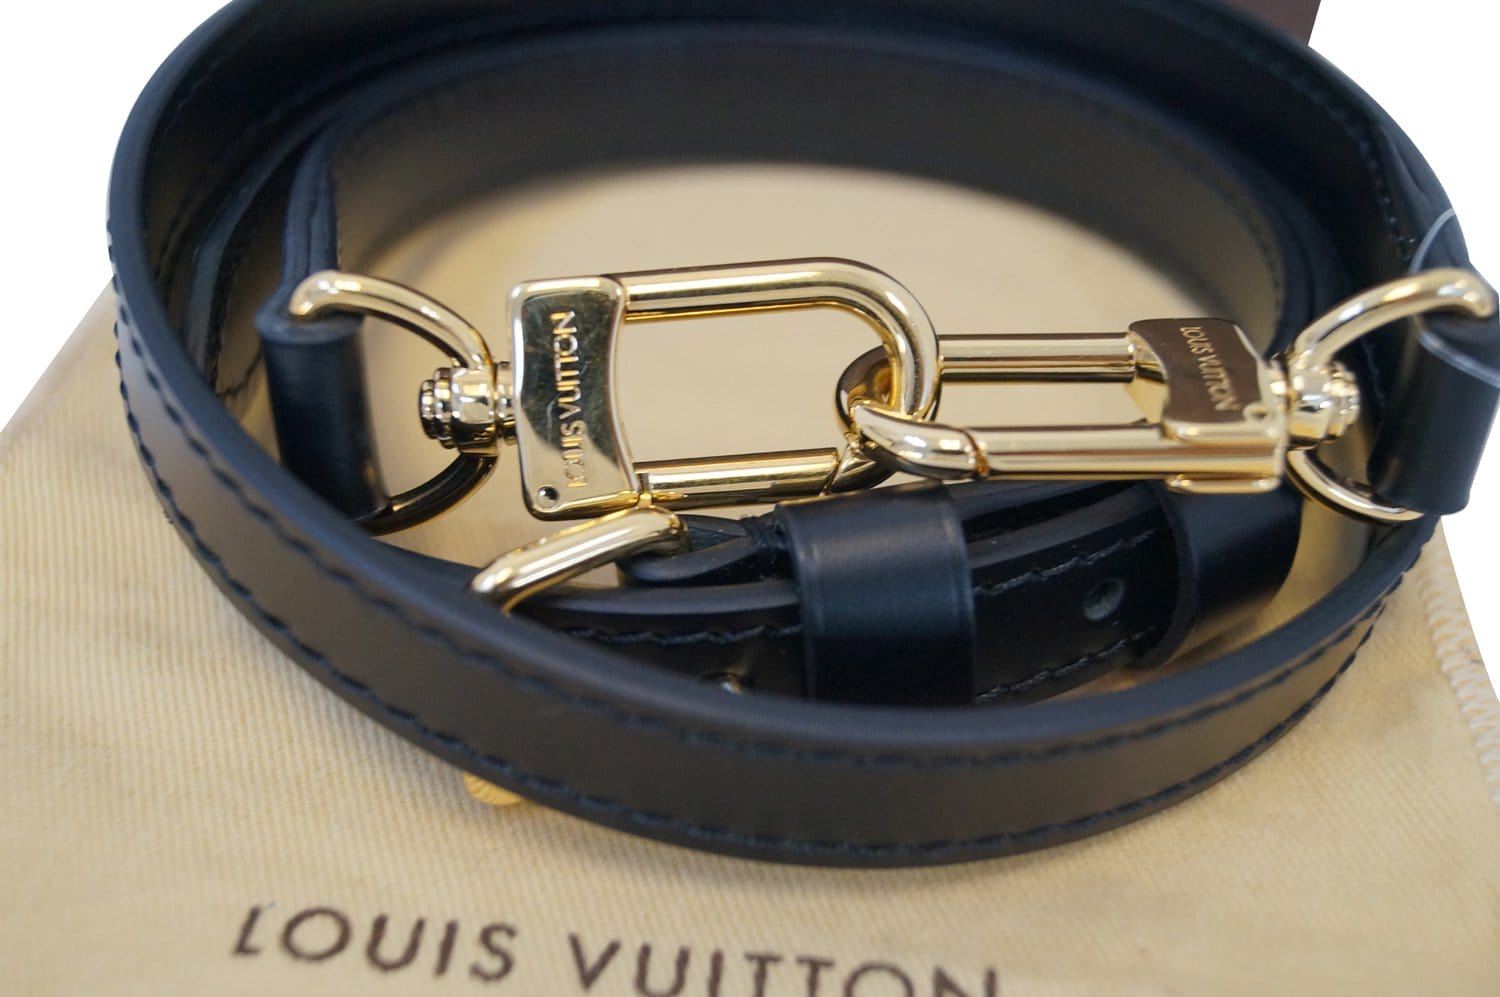 Authentic Brand New Louis Vuitton Leather Shoulder Strap Black